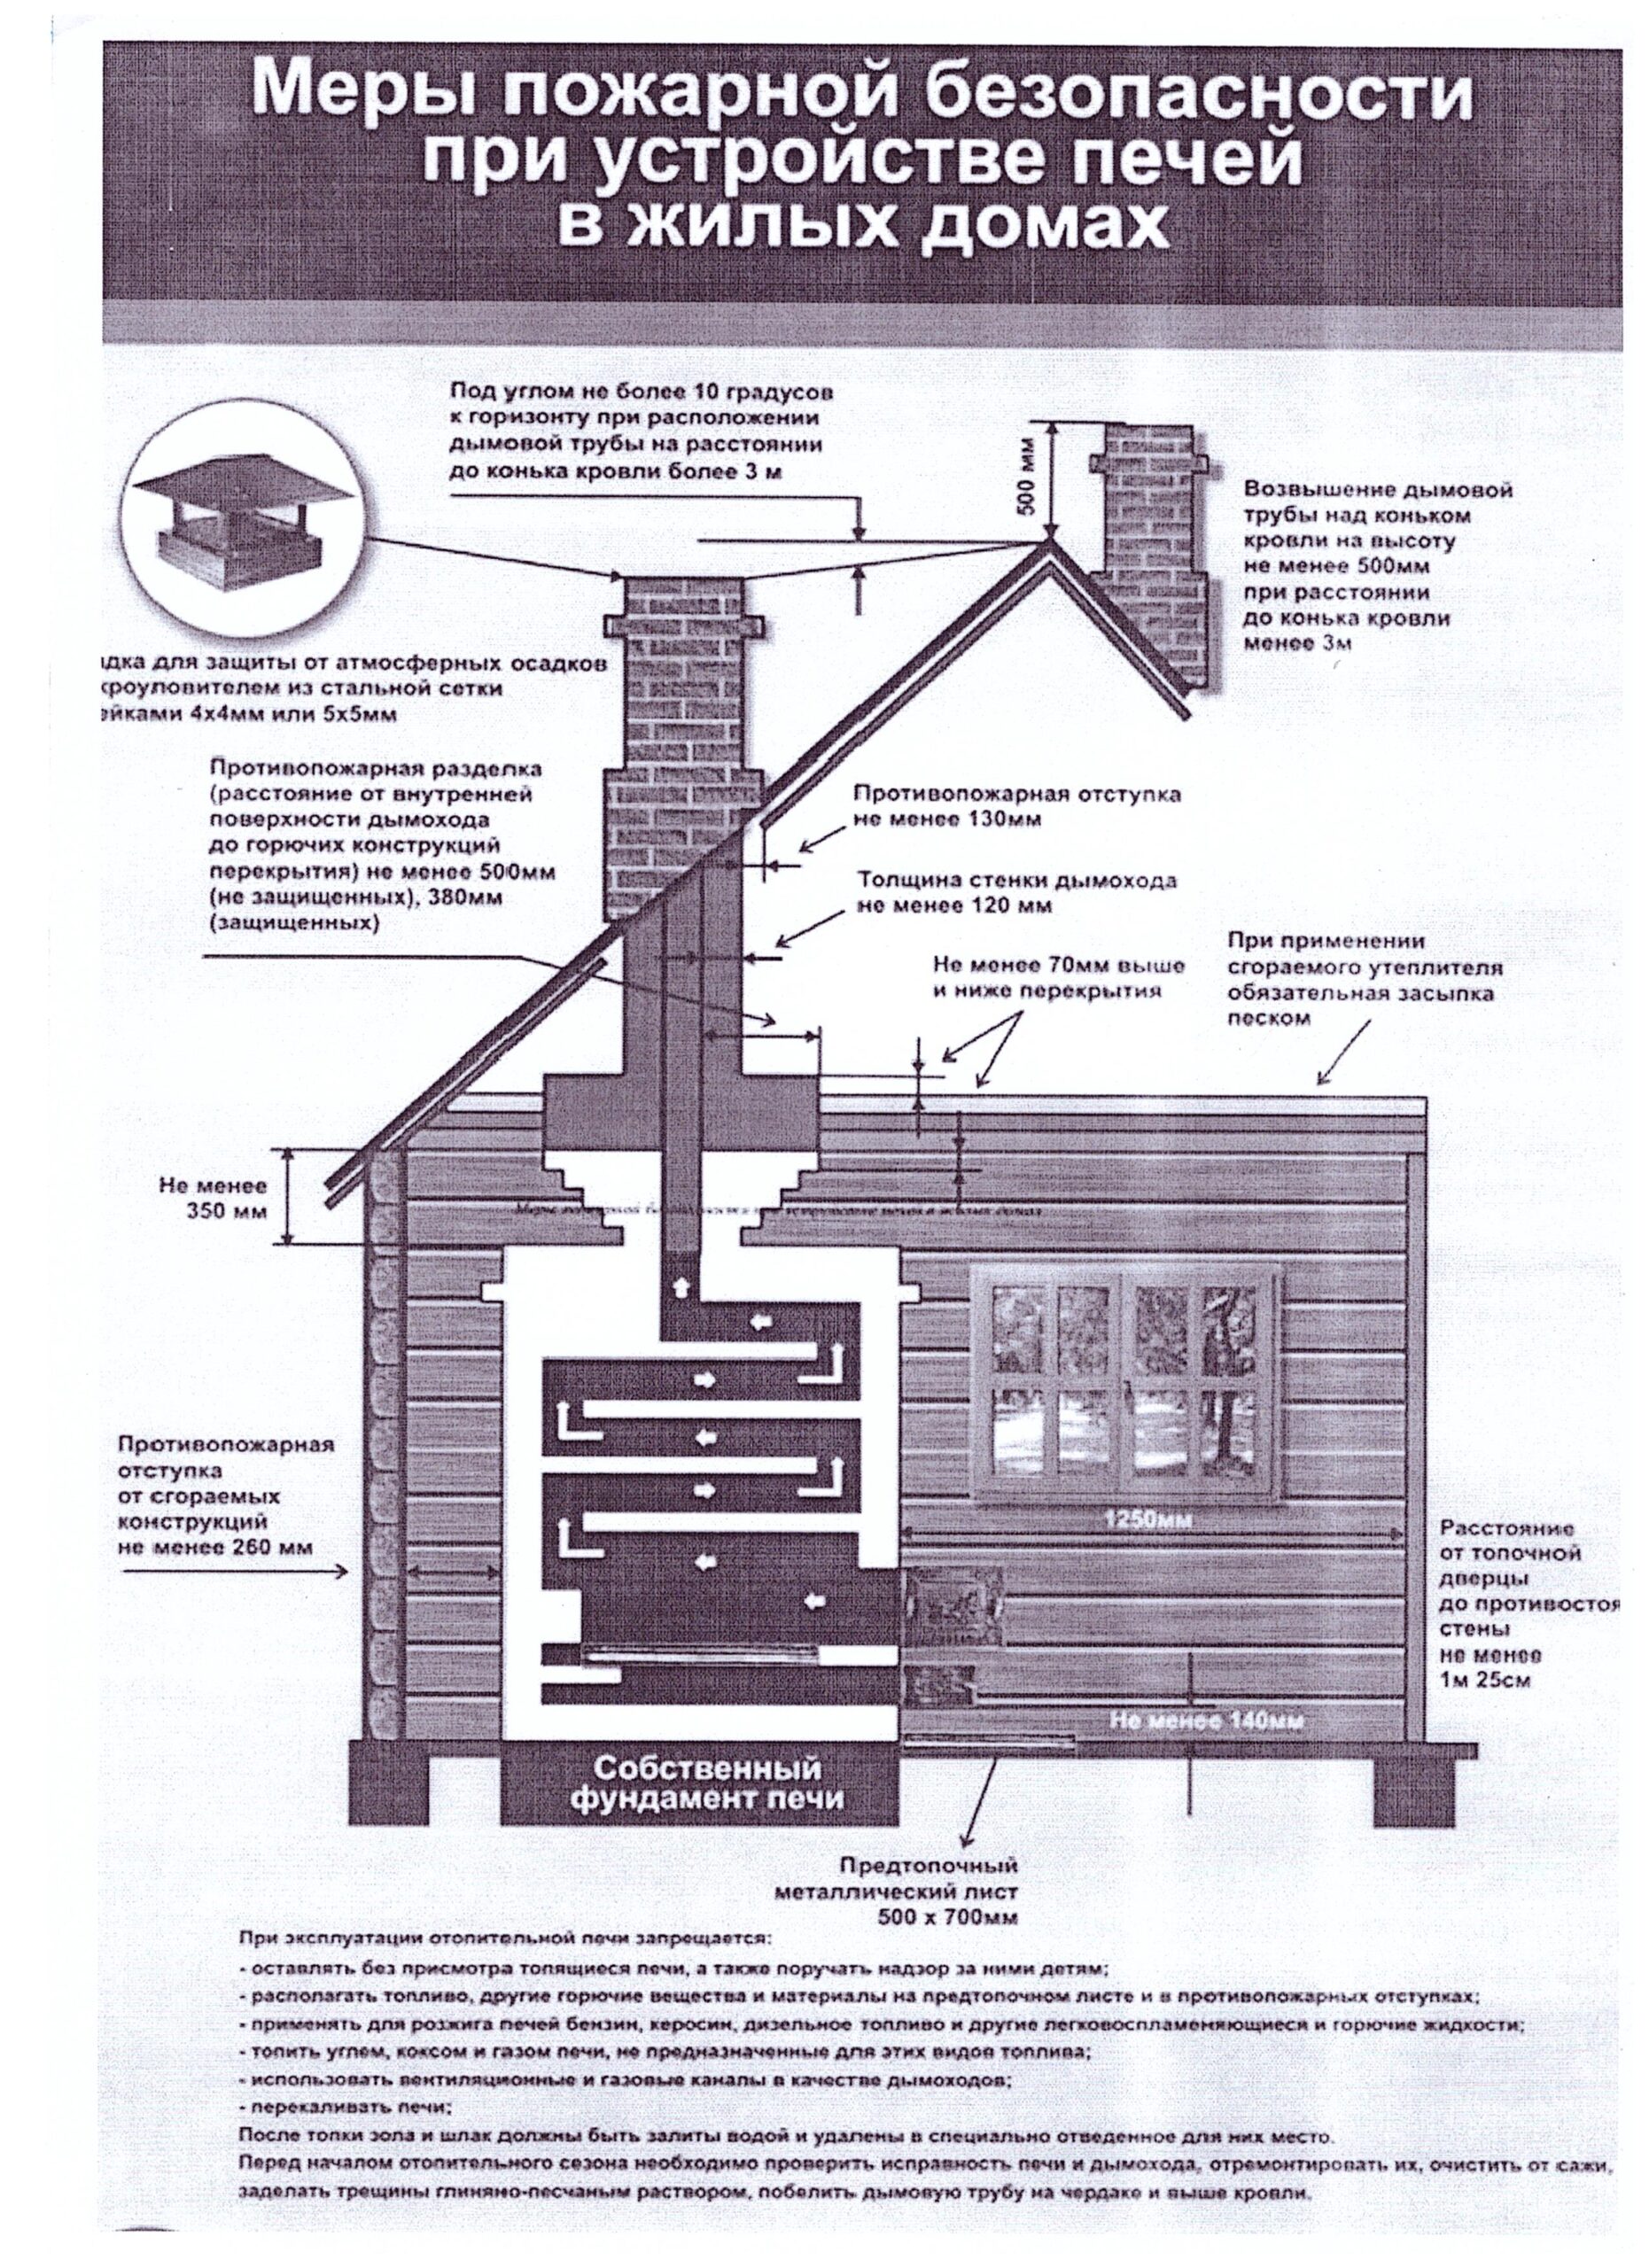 Меры пожарной безопасности при устройстве систем отопления и вентиляции